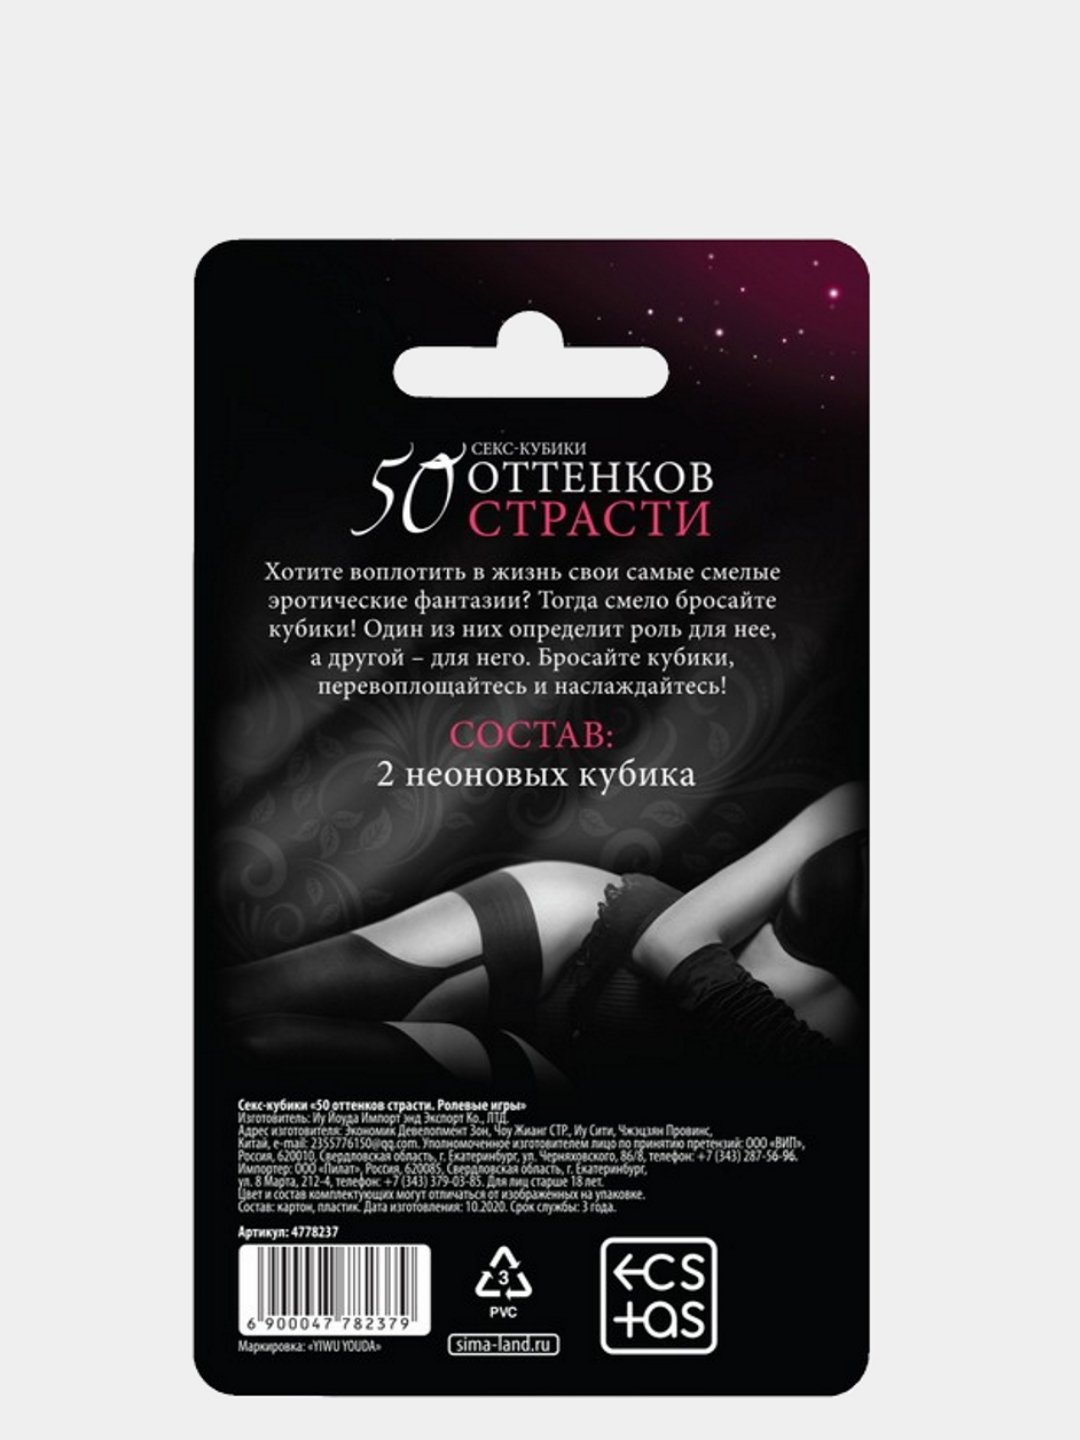 ТОП-7 сексуальных игр - адвокаты-калуга.рф